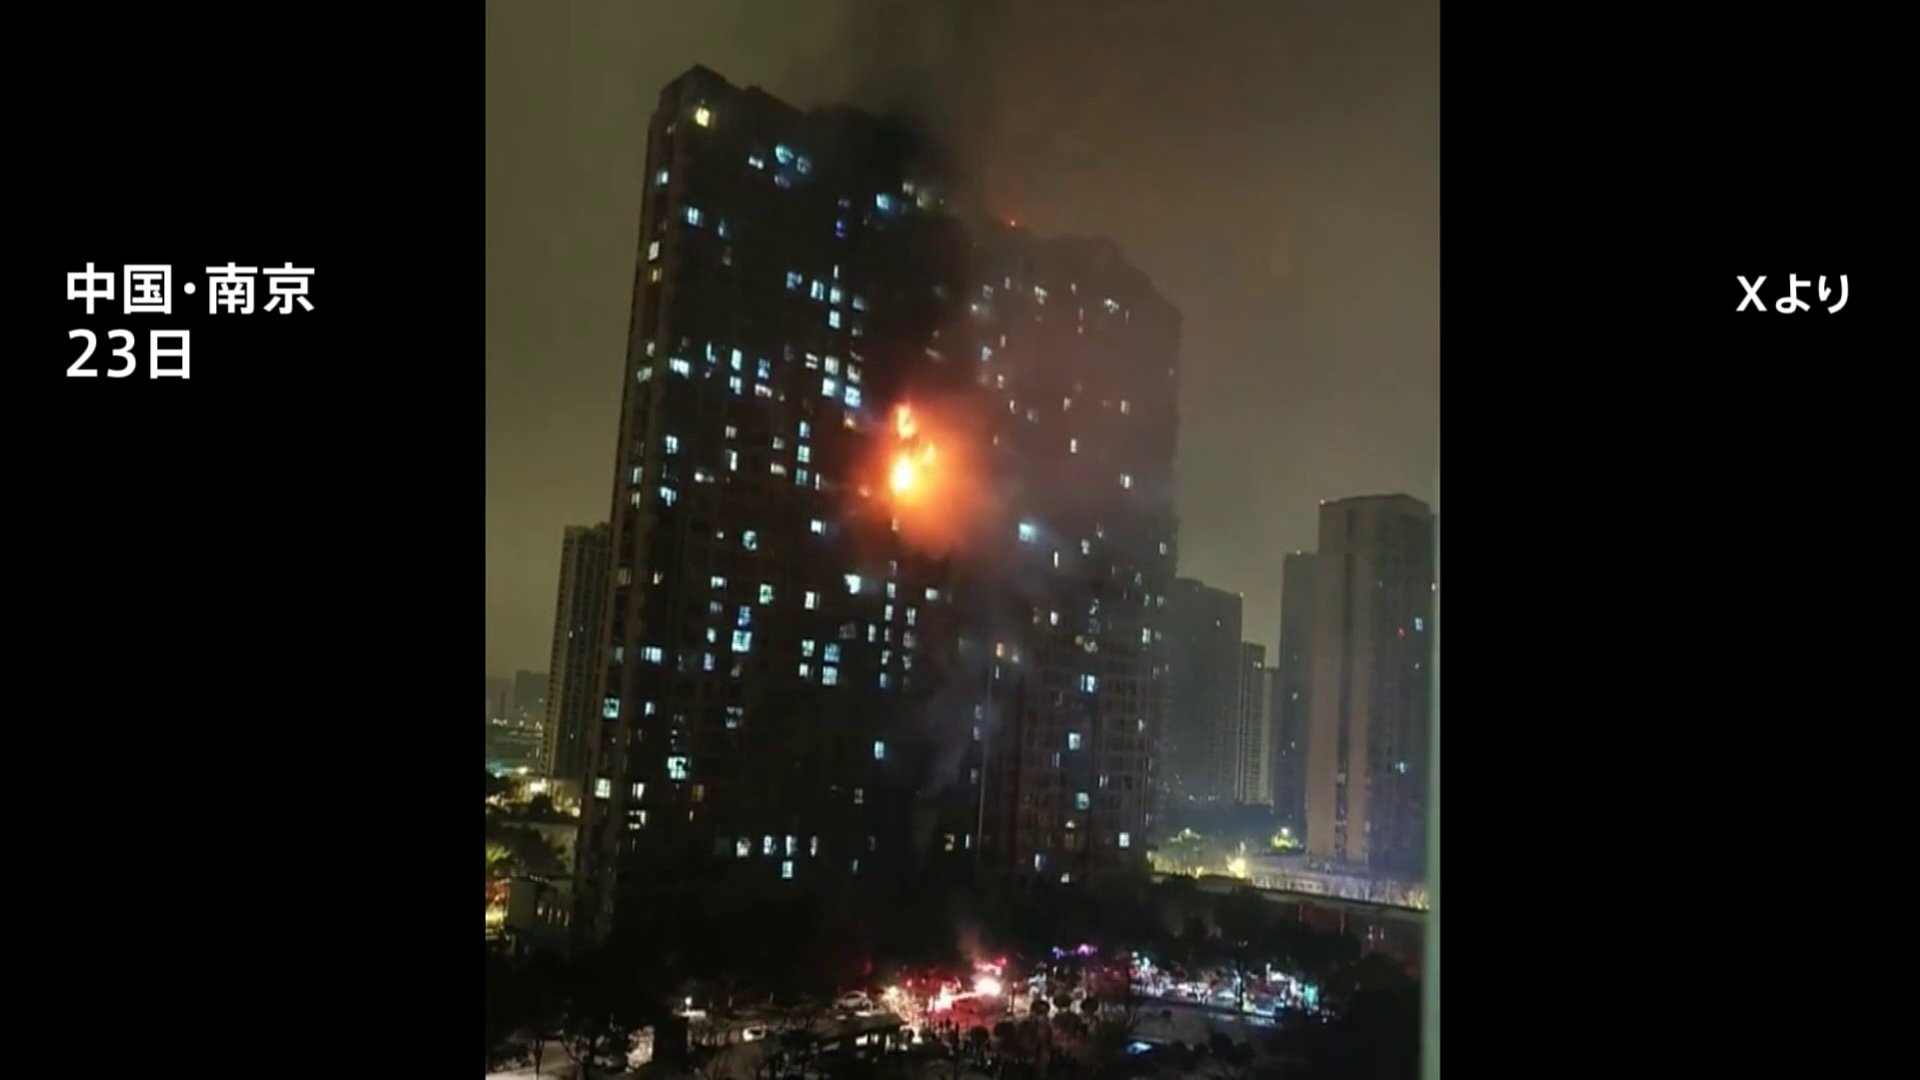 中国・南京市の34階建てマンションで火災 15人死亡、電動バイクが火元か